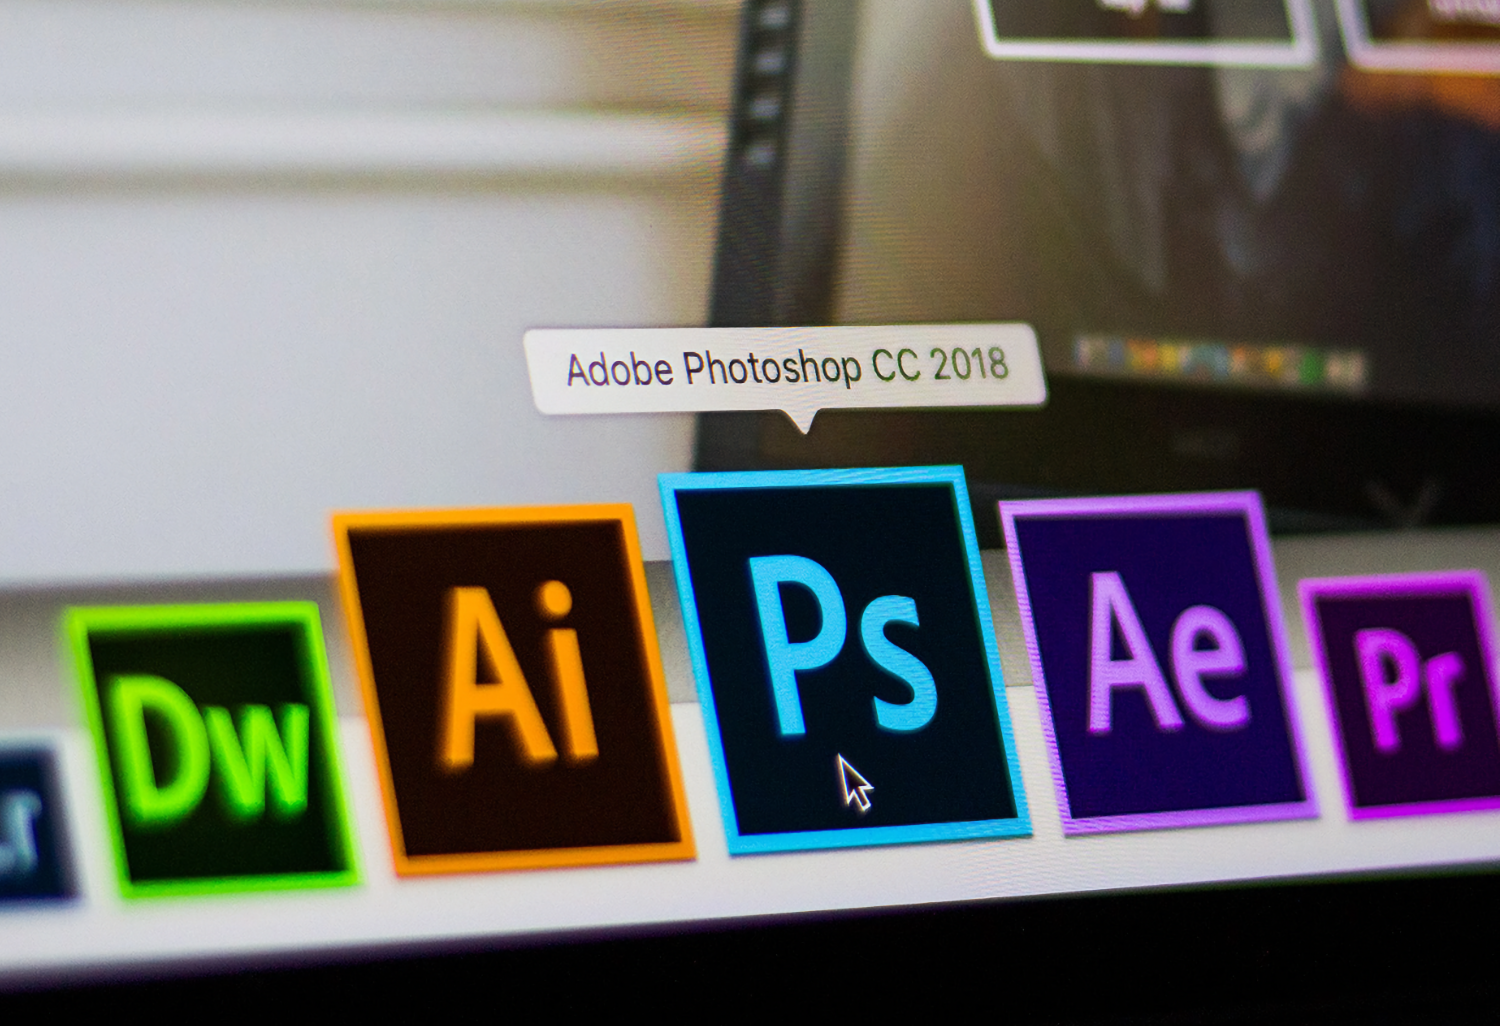 Photoshop и прочие программы Adobe вновь можно скачать из России. Спустя почти год после блокировки